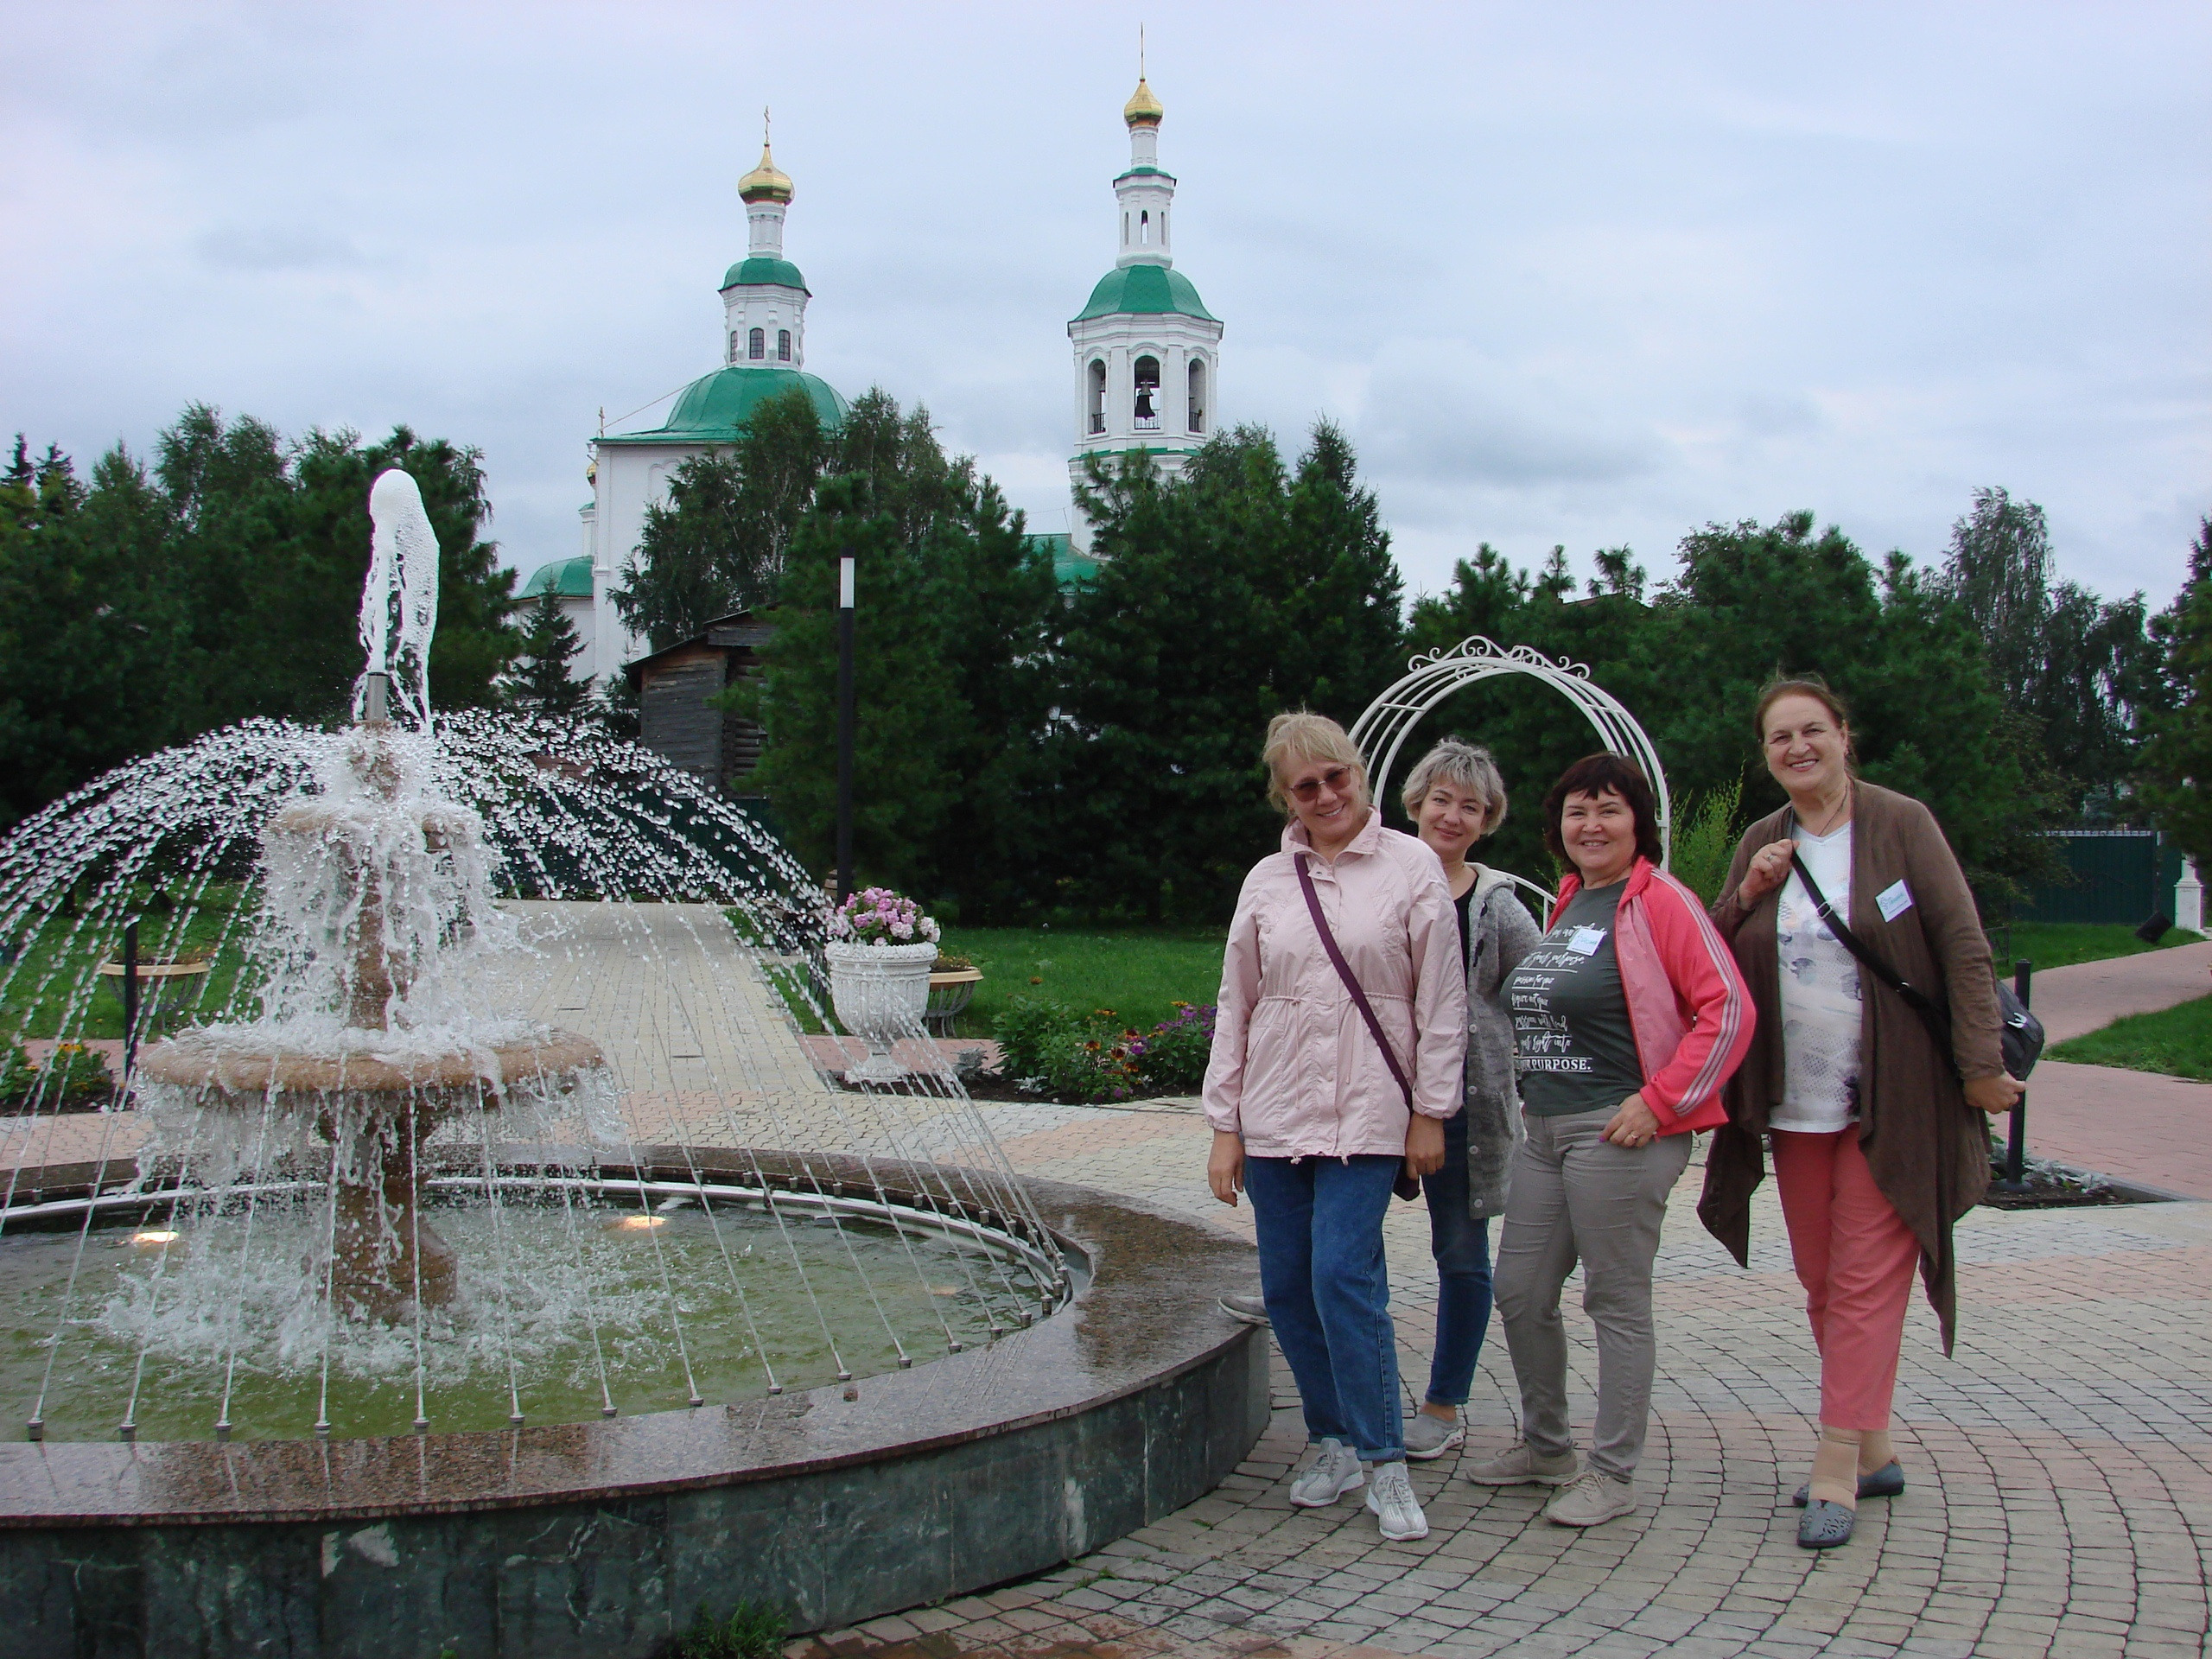 А в Пушкинксокм сквере тоже работает фонтан — омичам есть чему позавидовать